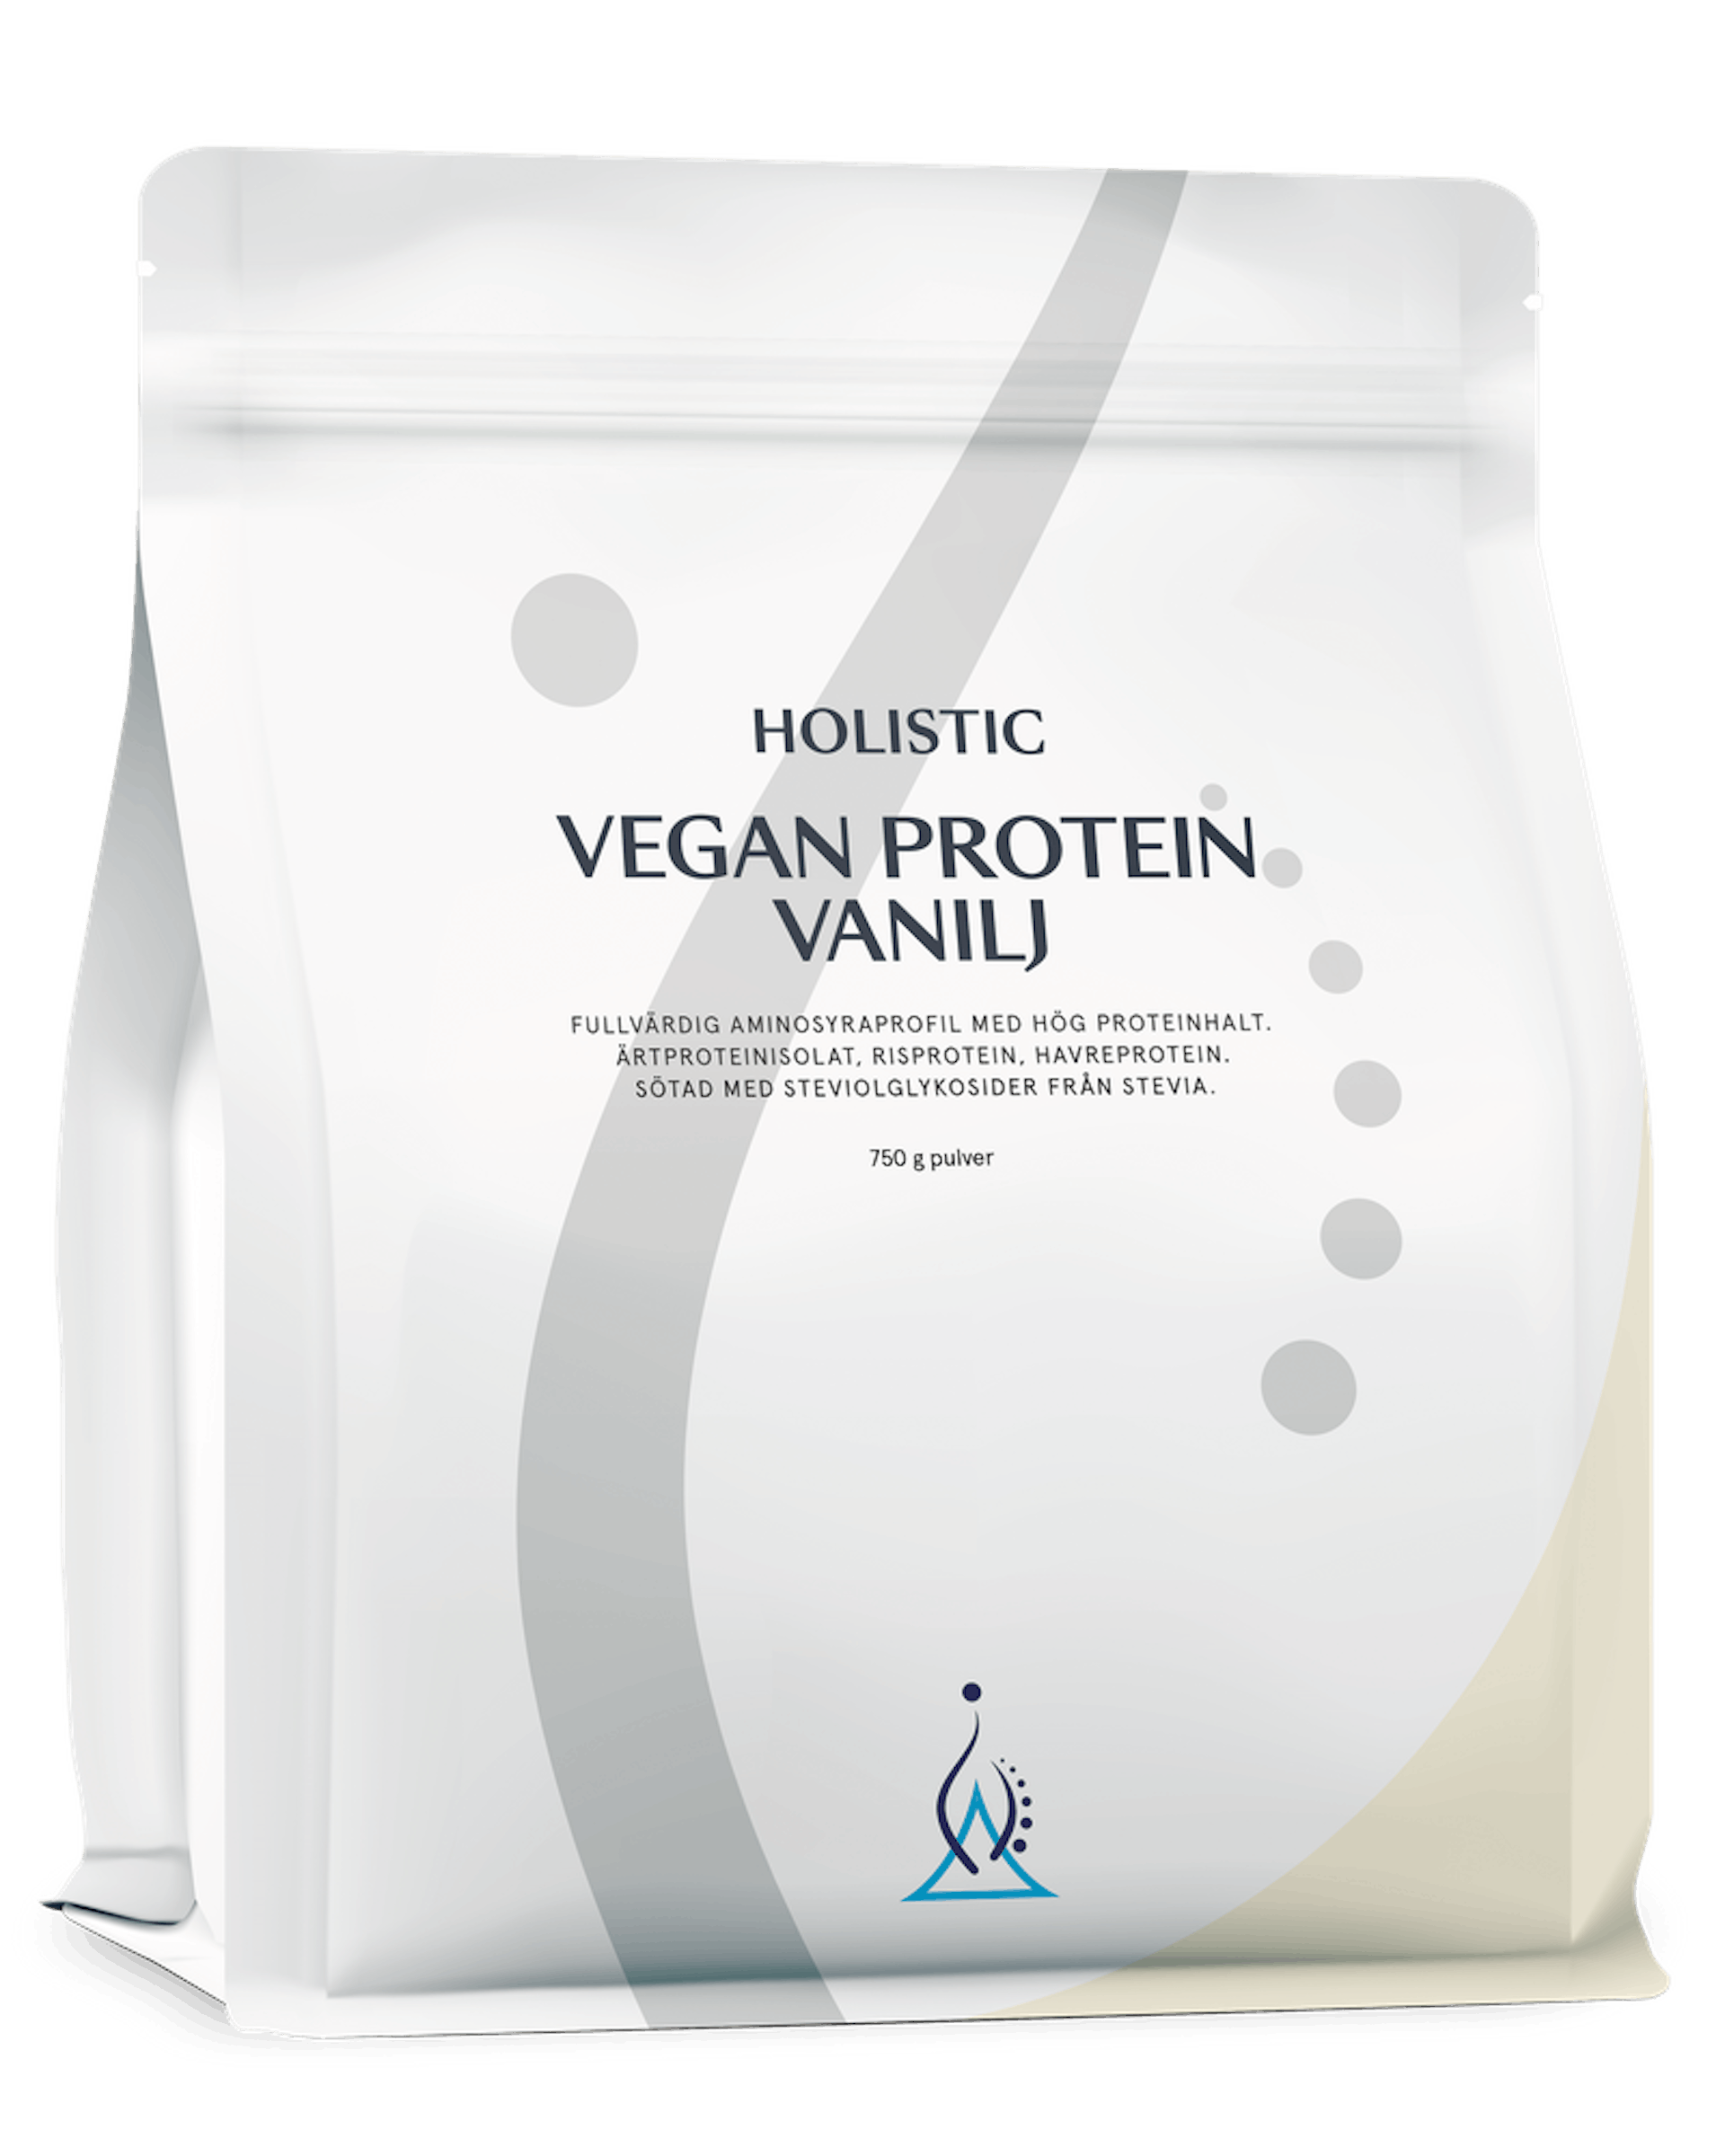 Vegan protein vanilj, 750g (1 av 1)